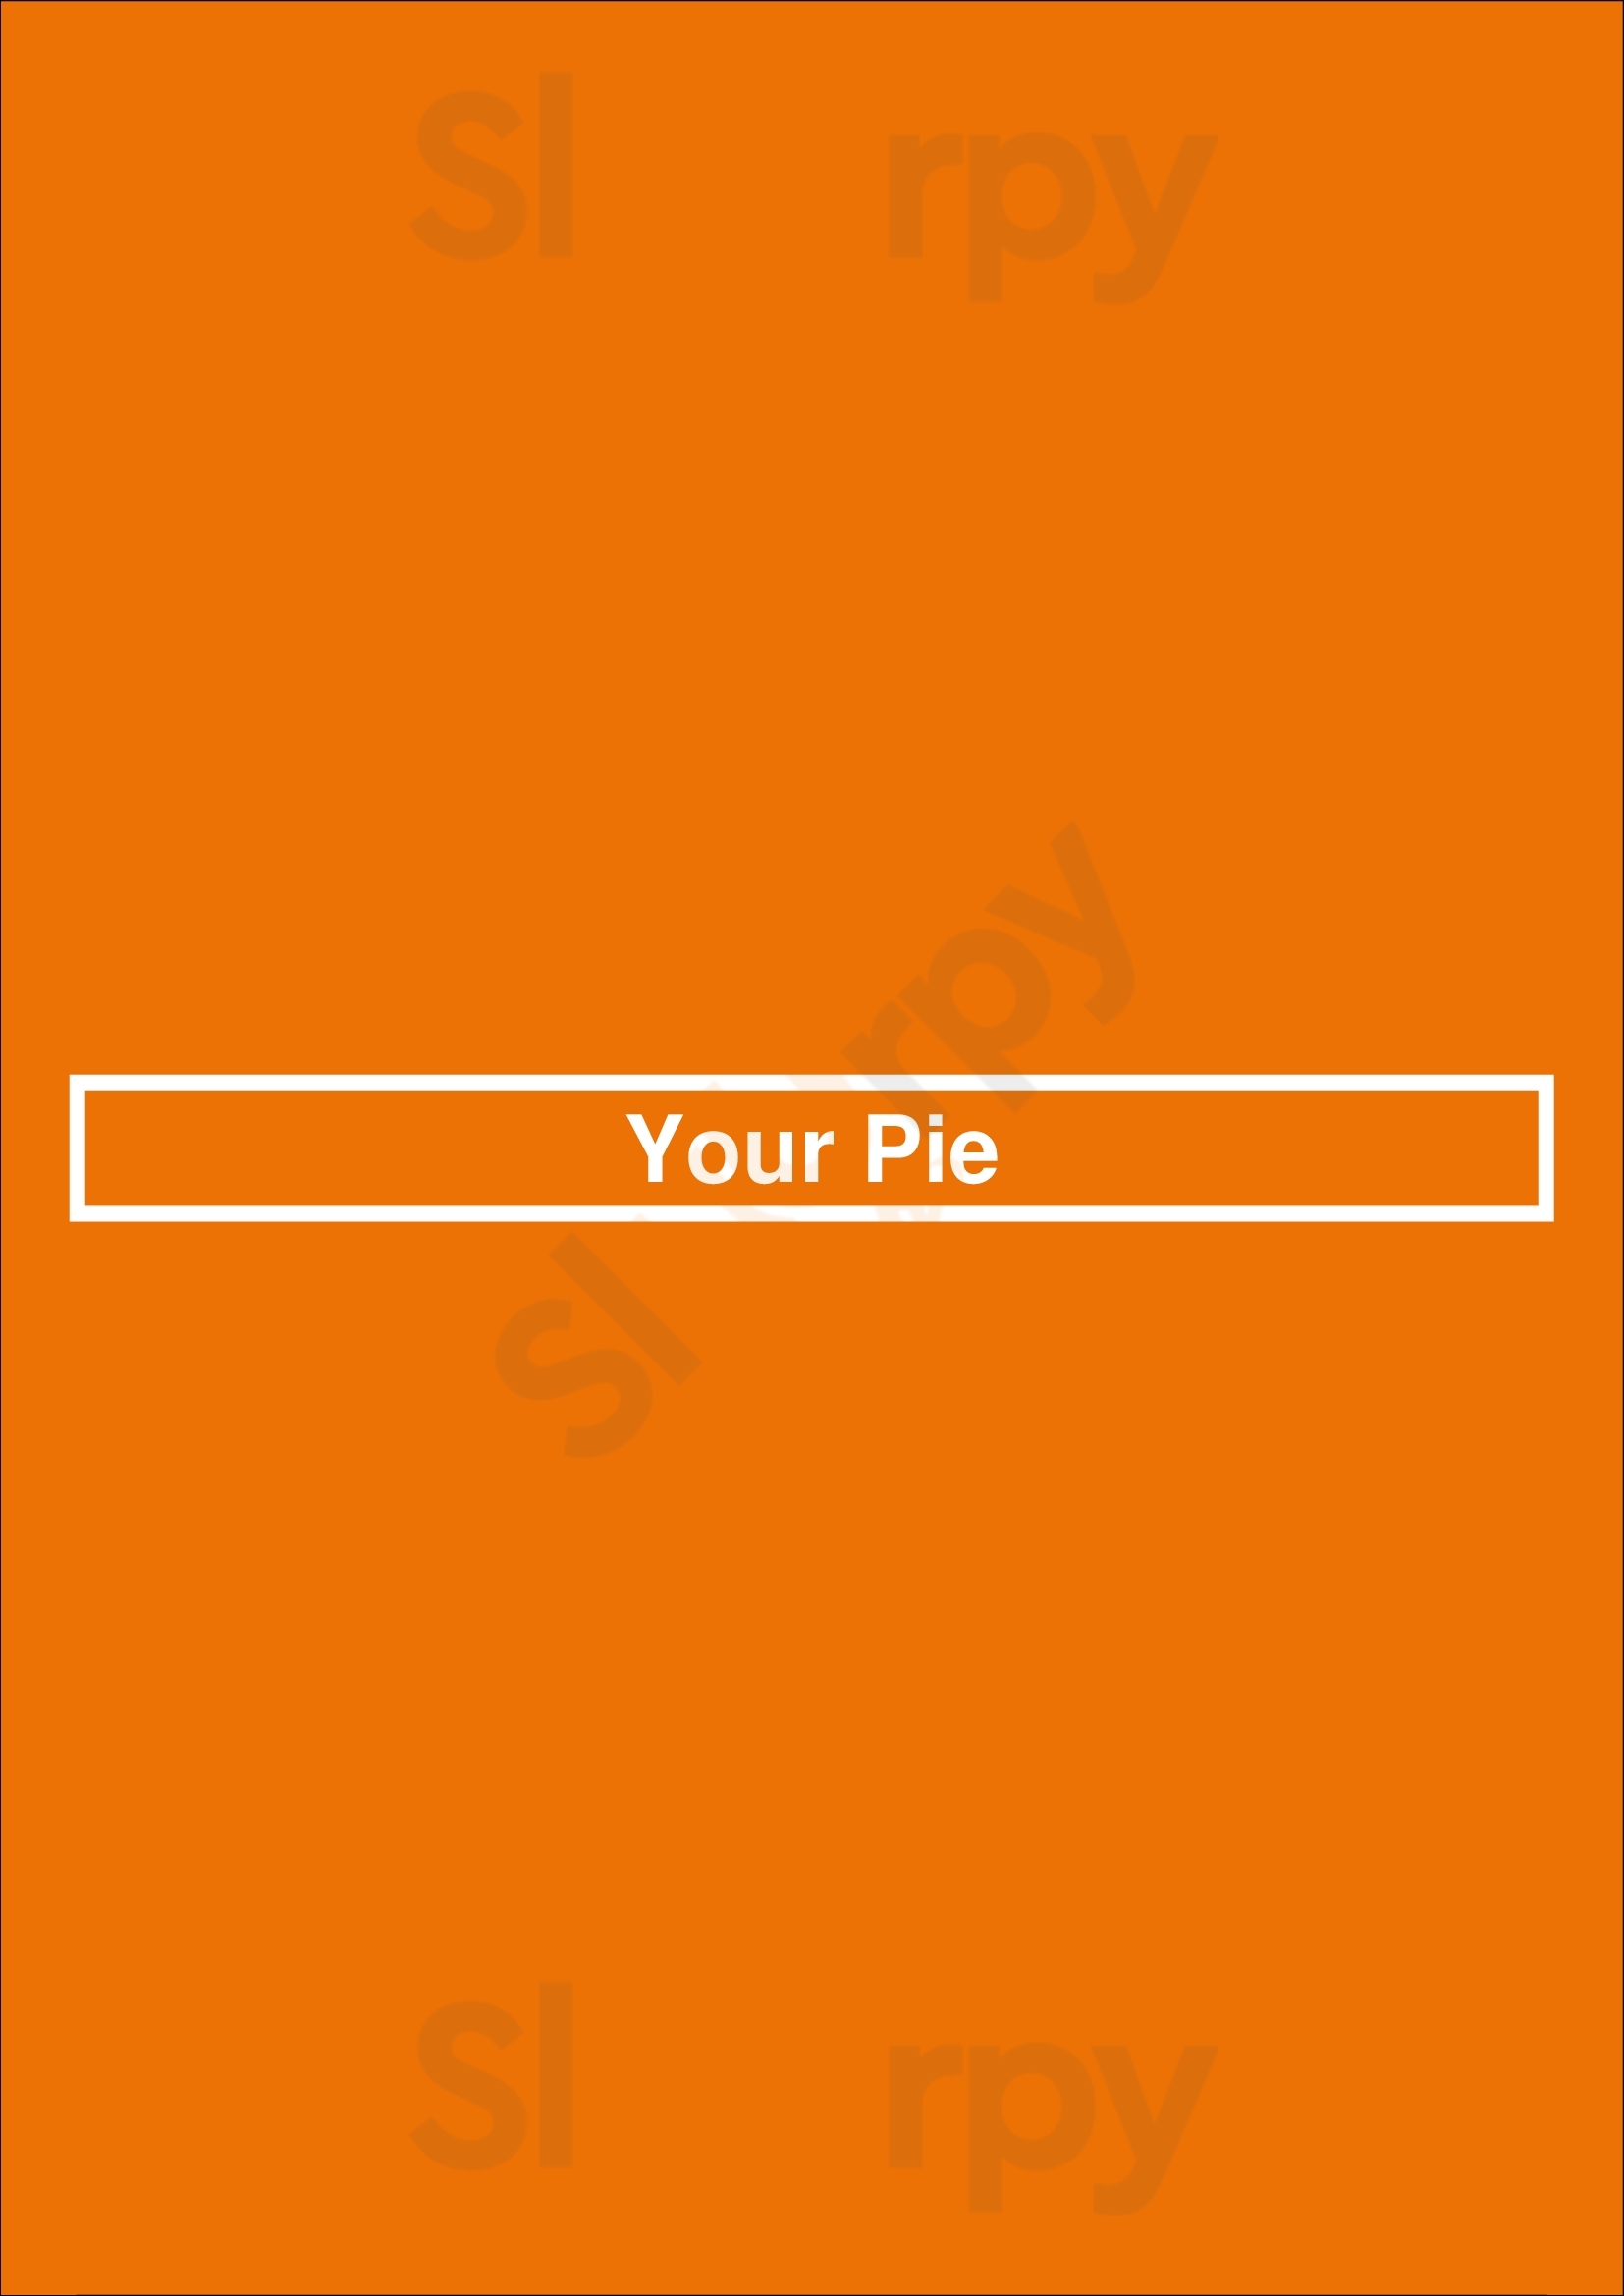 Your Pie Virginia Beach Menu - 1